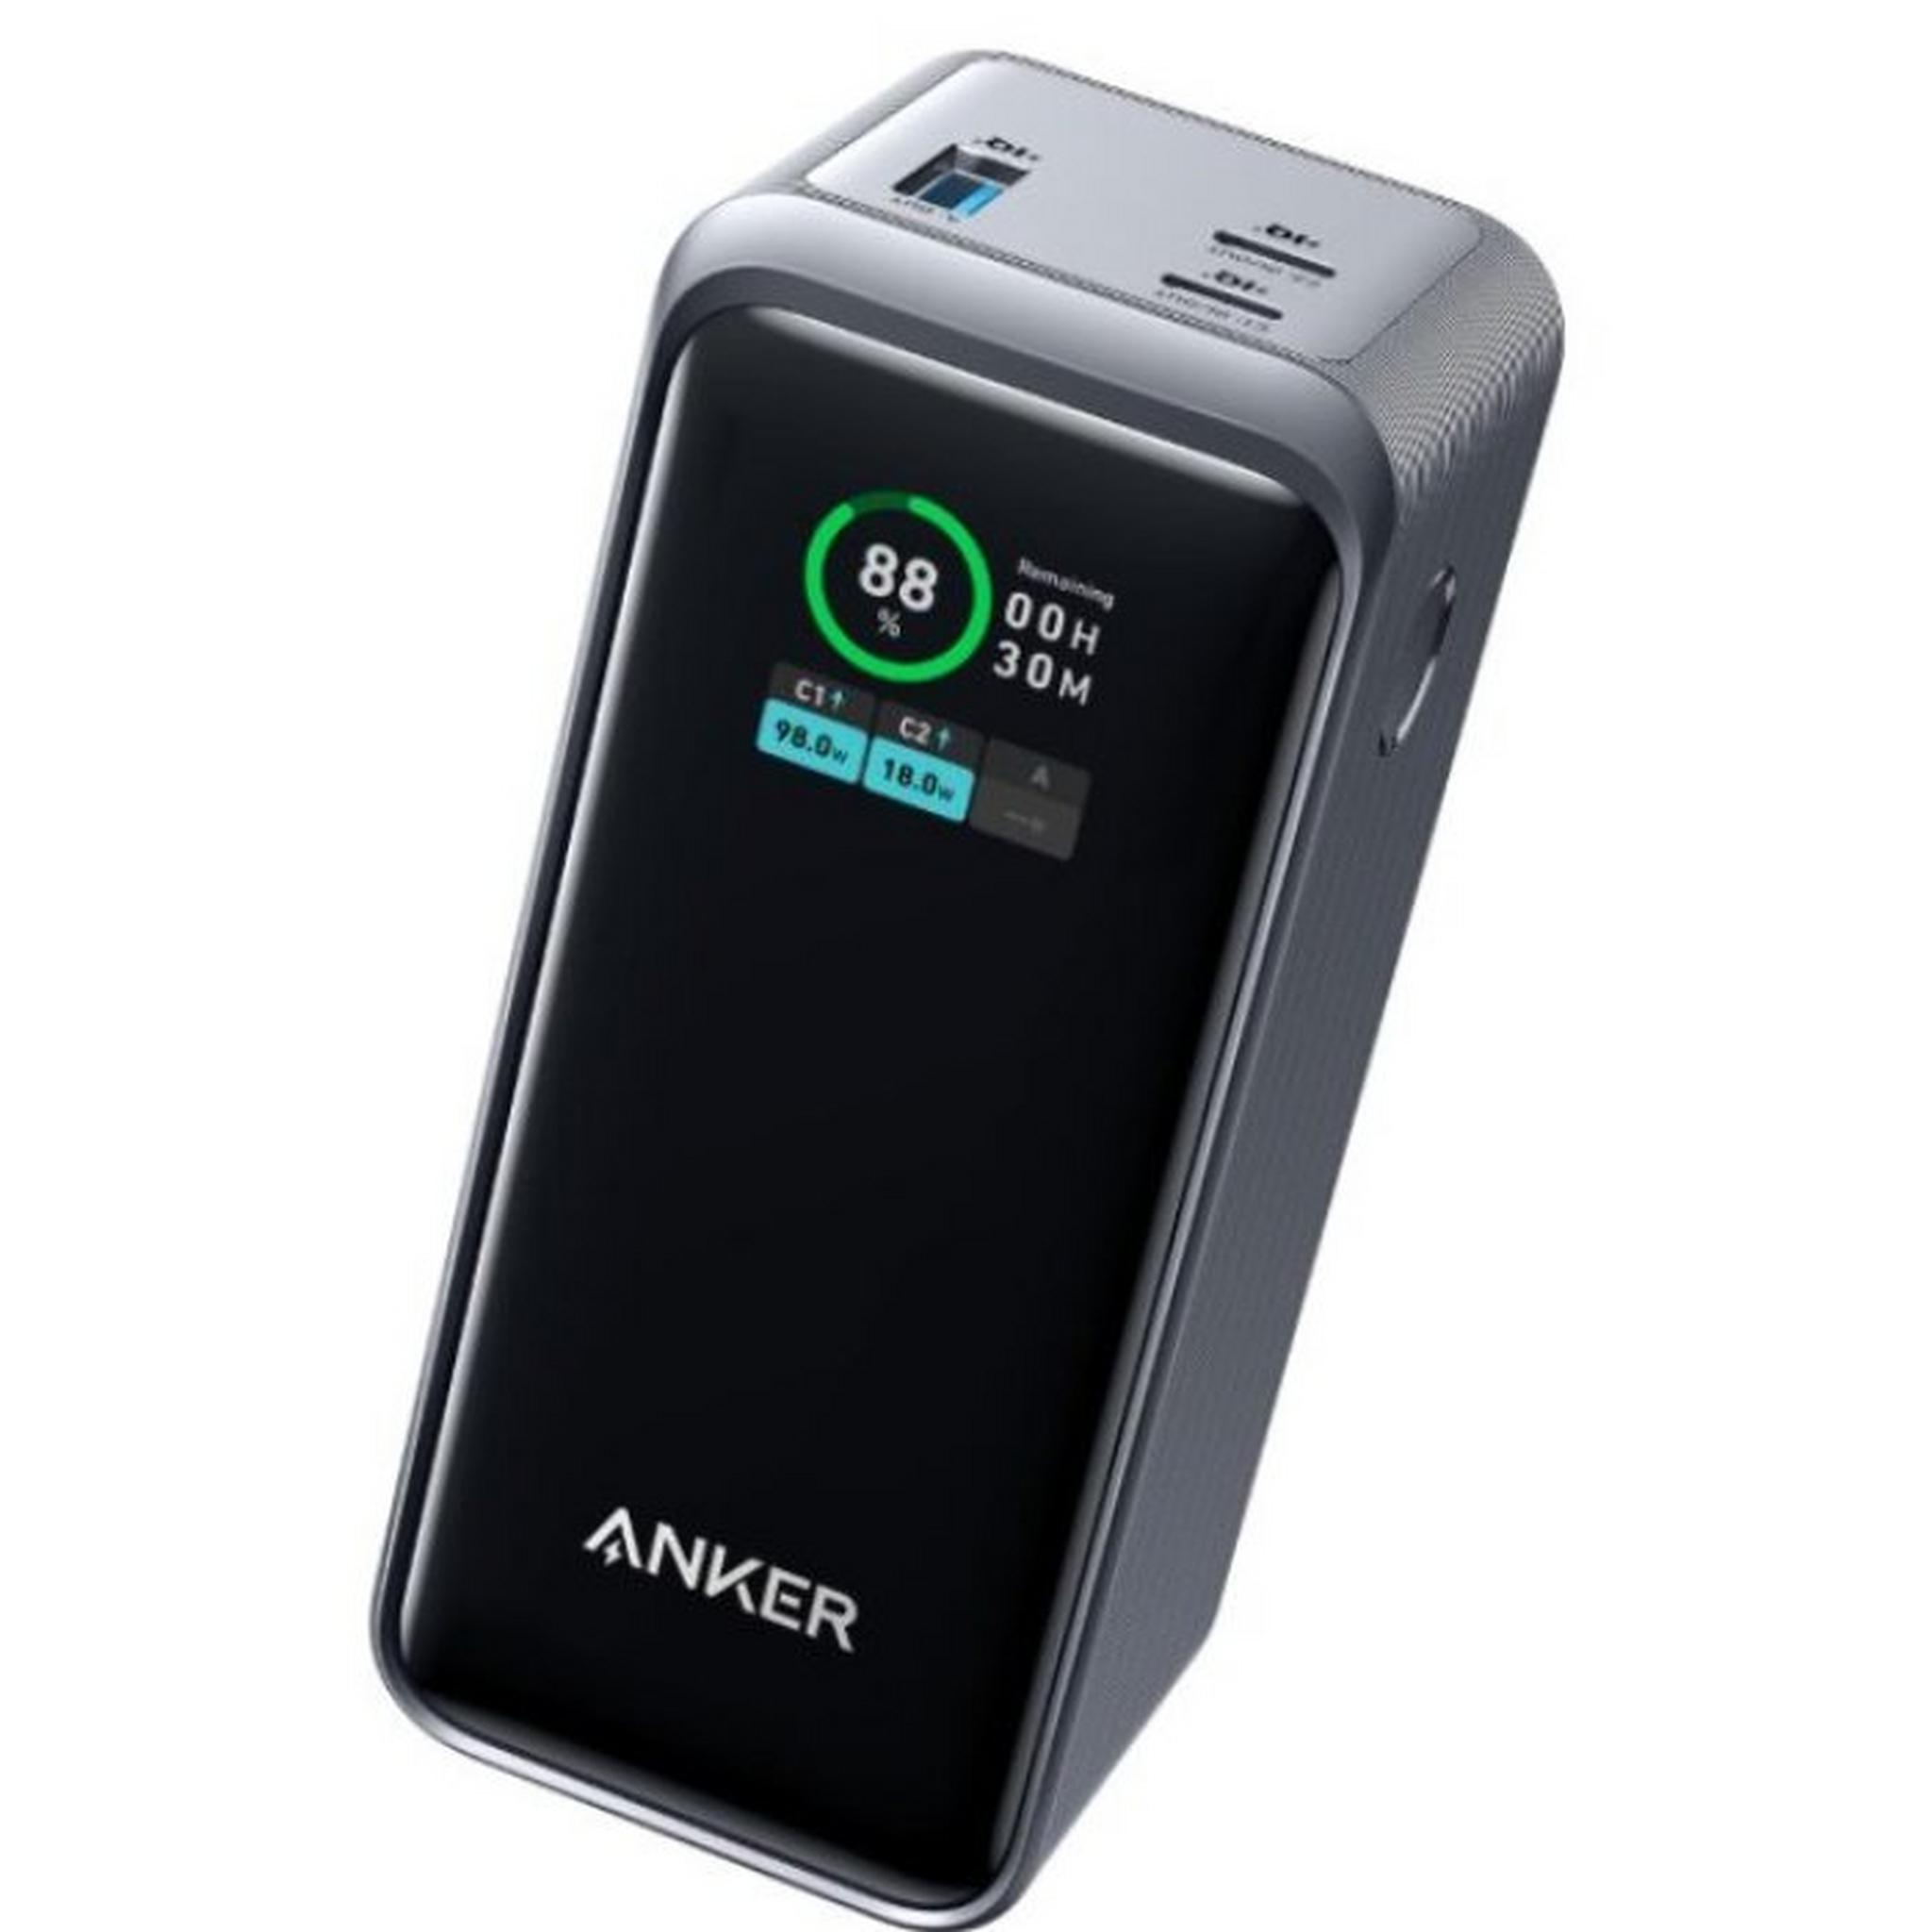 Anker Prime 3-ports Power Bank, 20,000mAh, 200W, A1336011 – Black